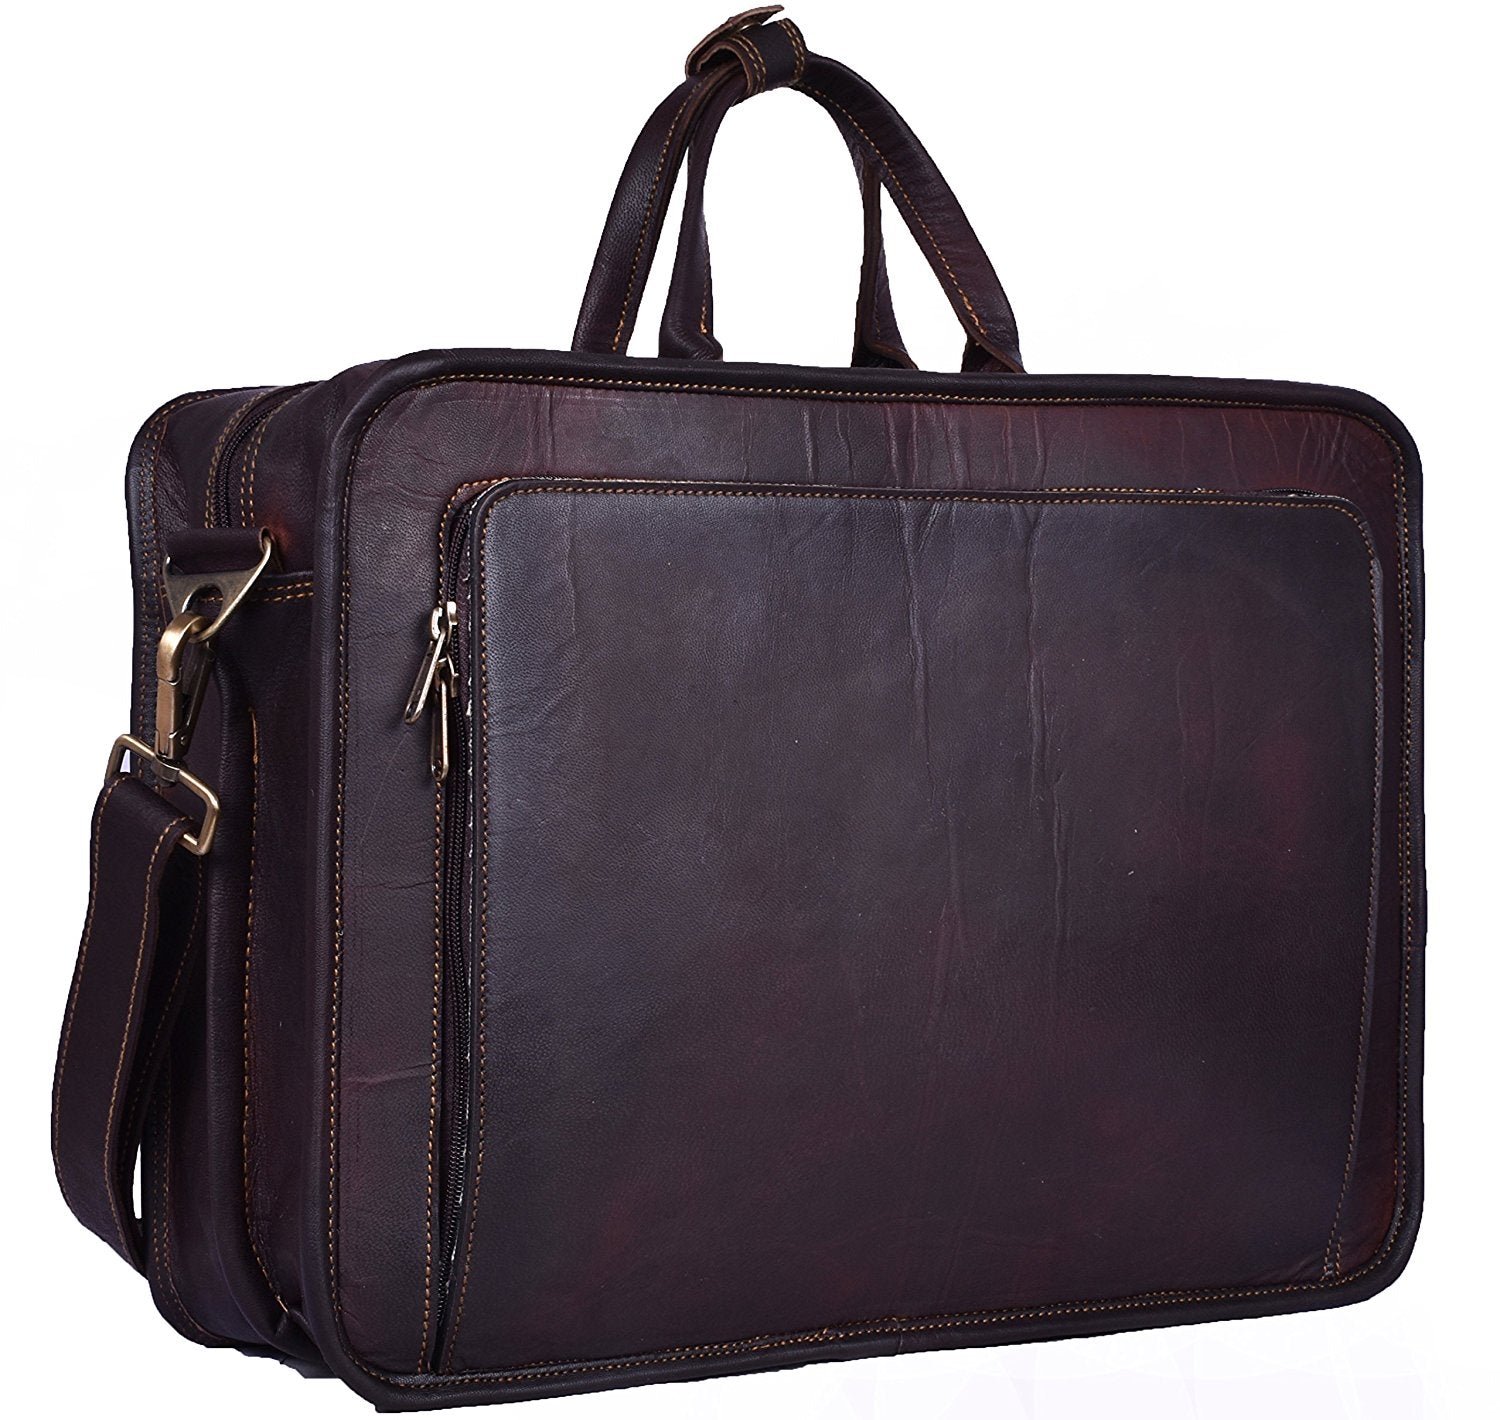 Rustic Brown Briefcase Bag by Hulsh